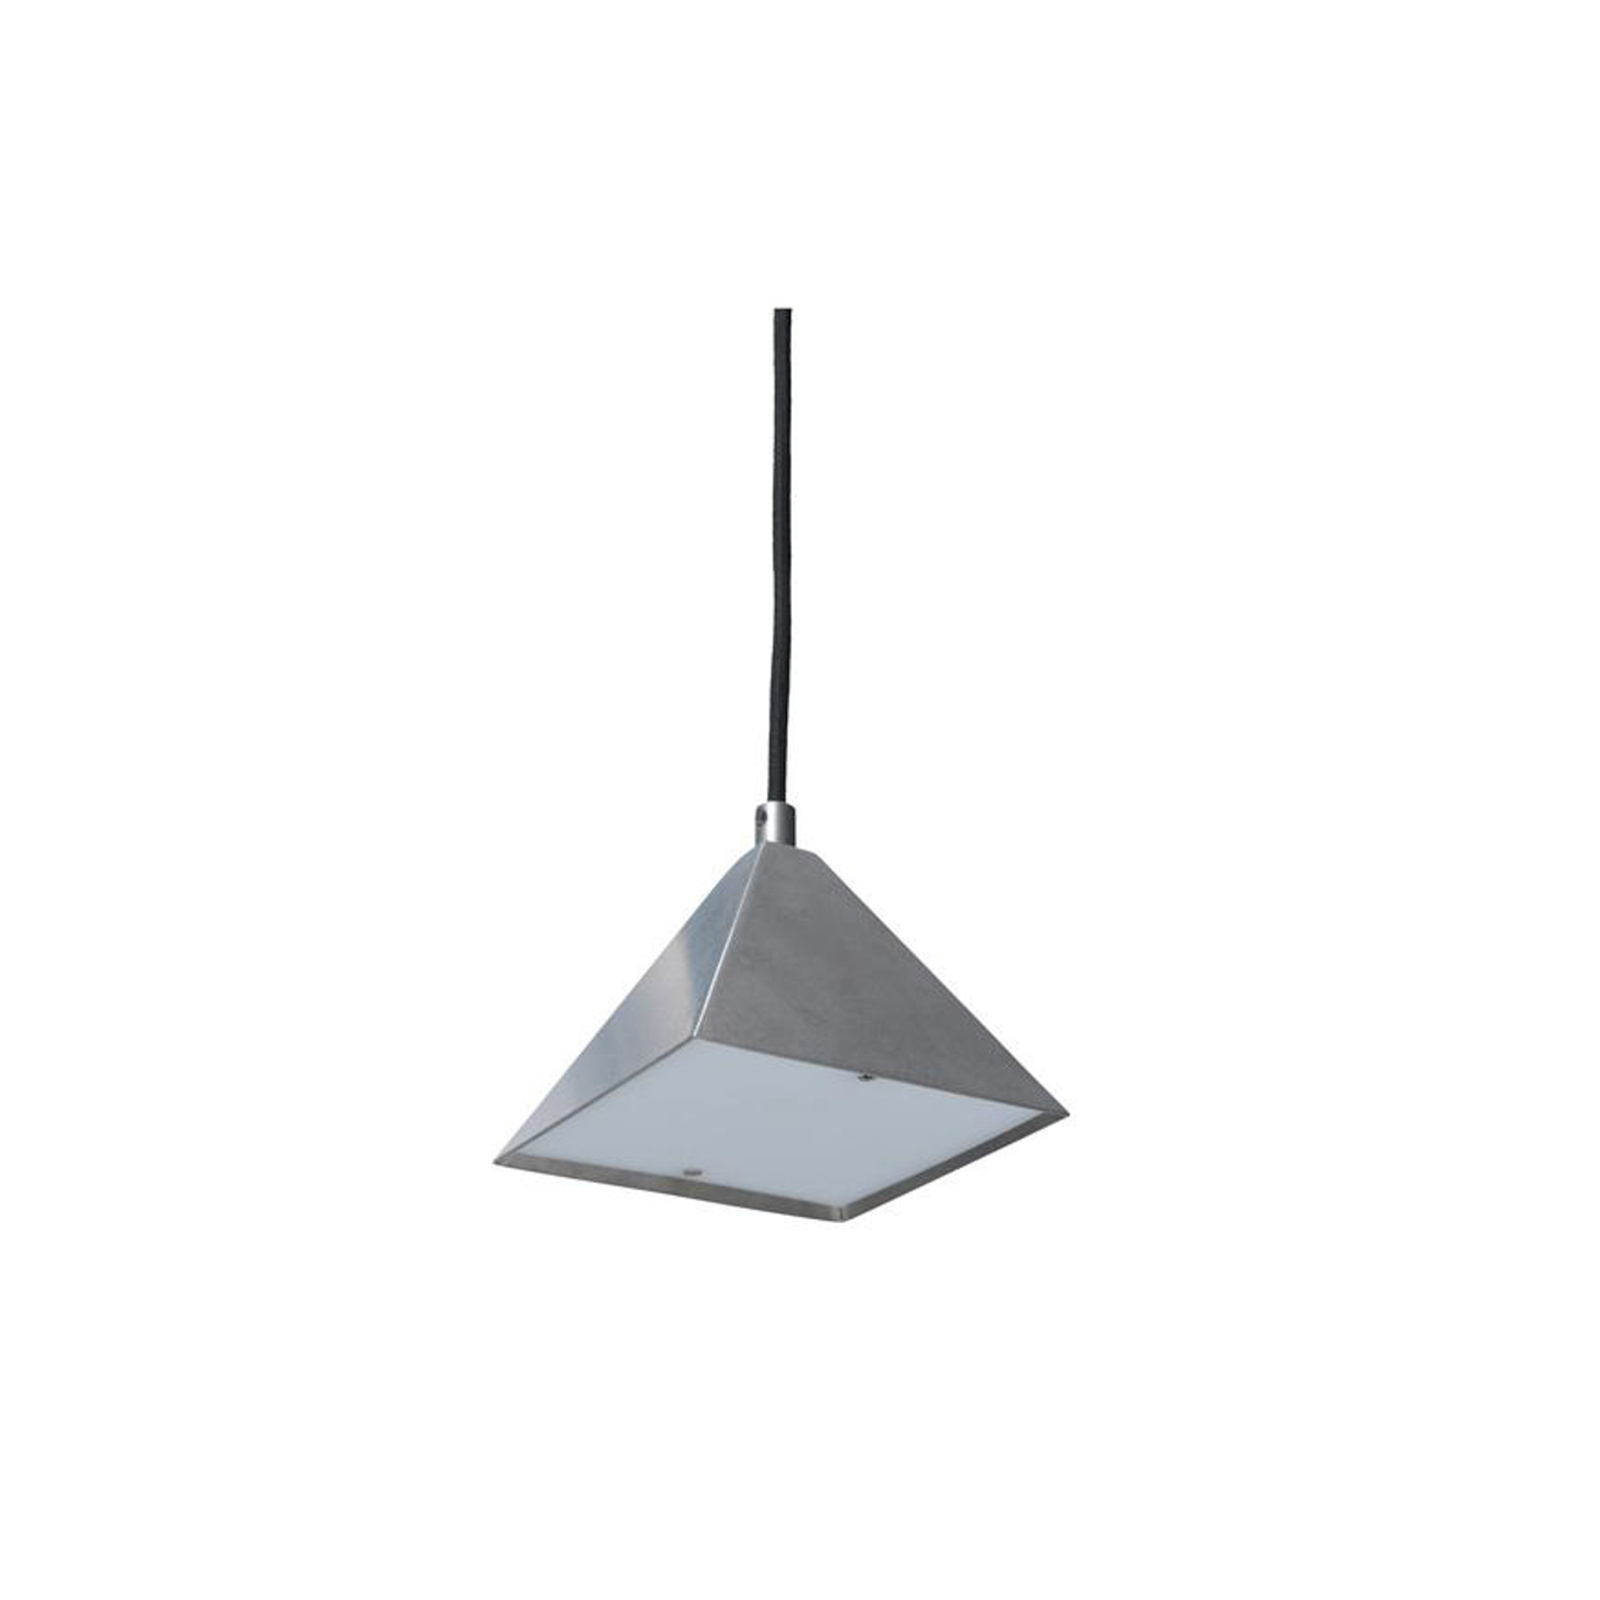 ferm LIVING Kare pendant light, steel grey, stainless steel, 12.5 cm